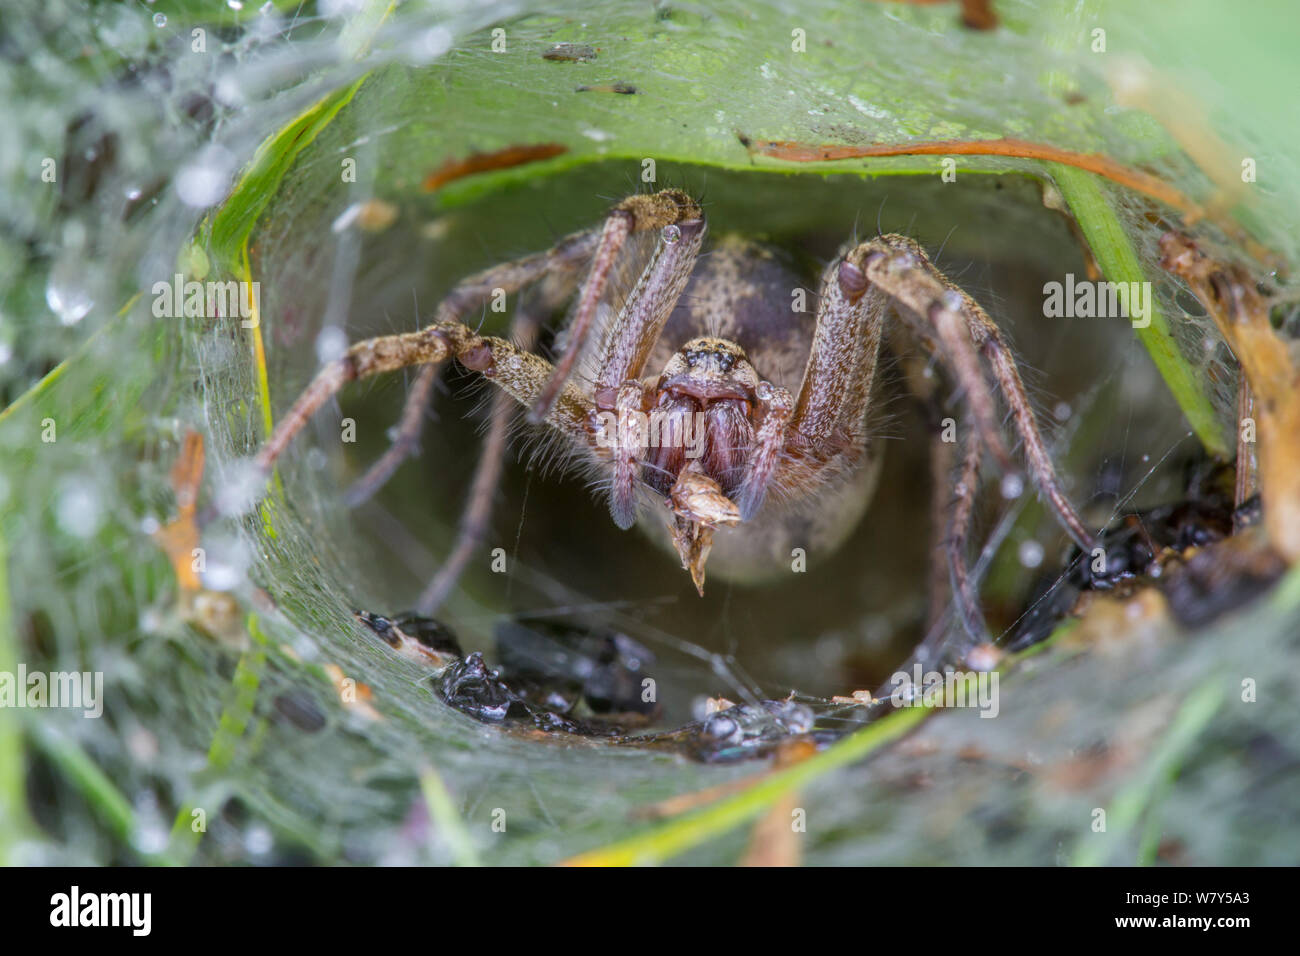 Labyrinth spider (Agelena labyrinthica) in den Trichter. Nordtirol, Österreichischen Alpen, Juli. Stockfoto